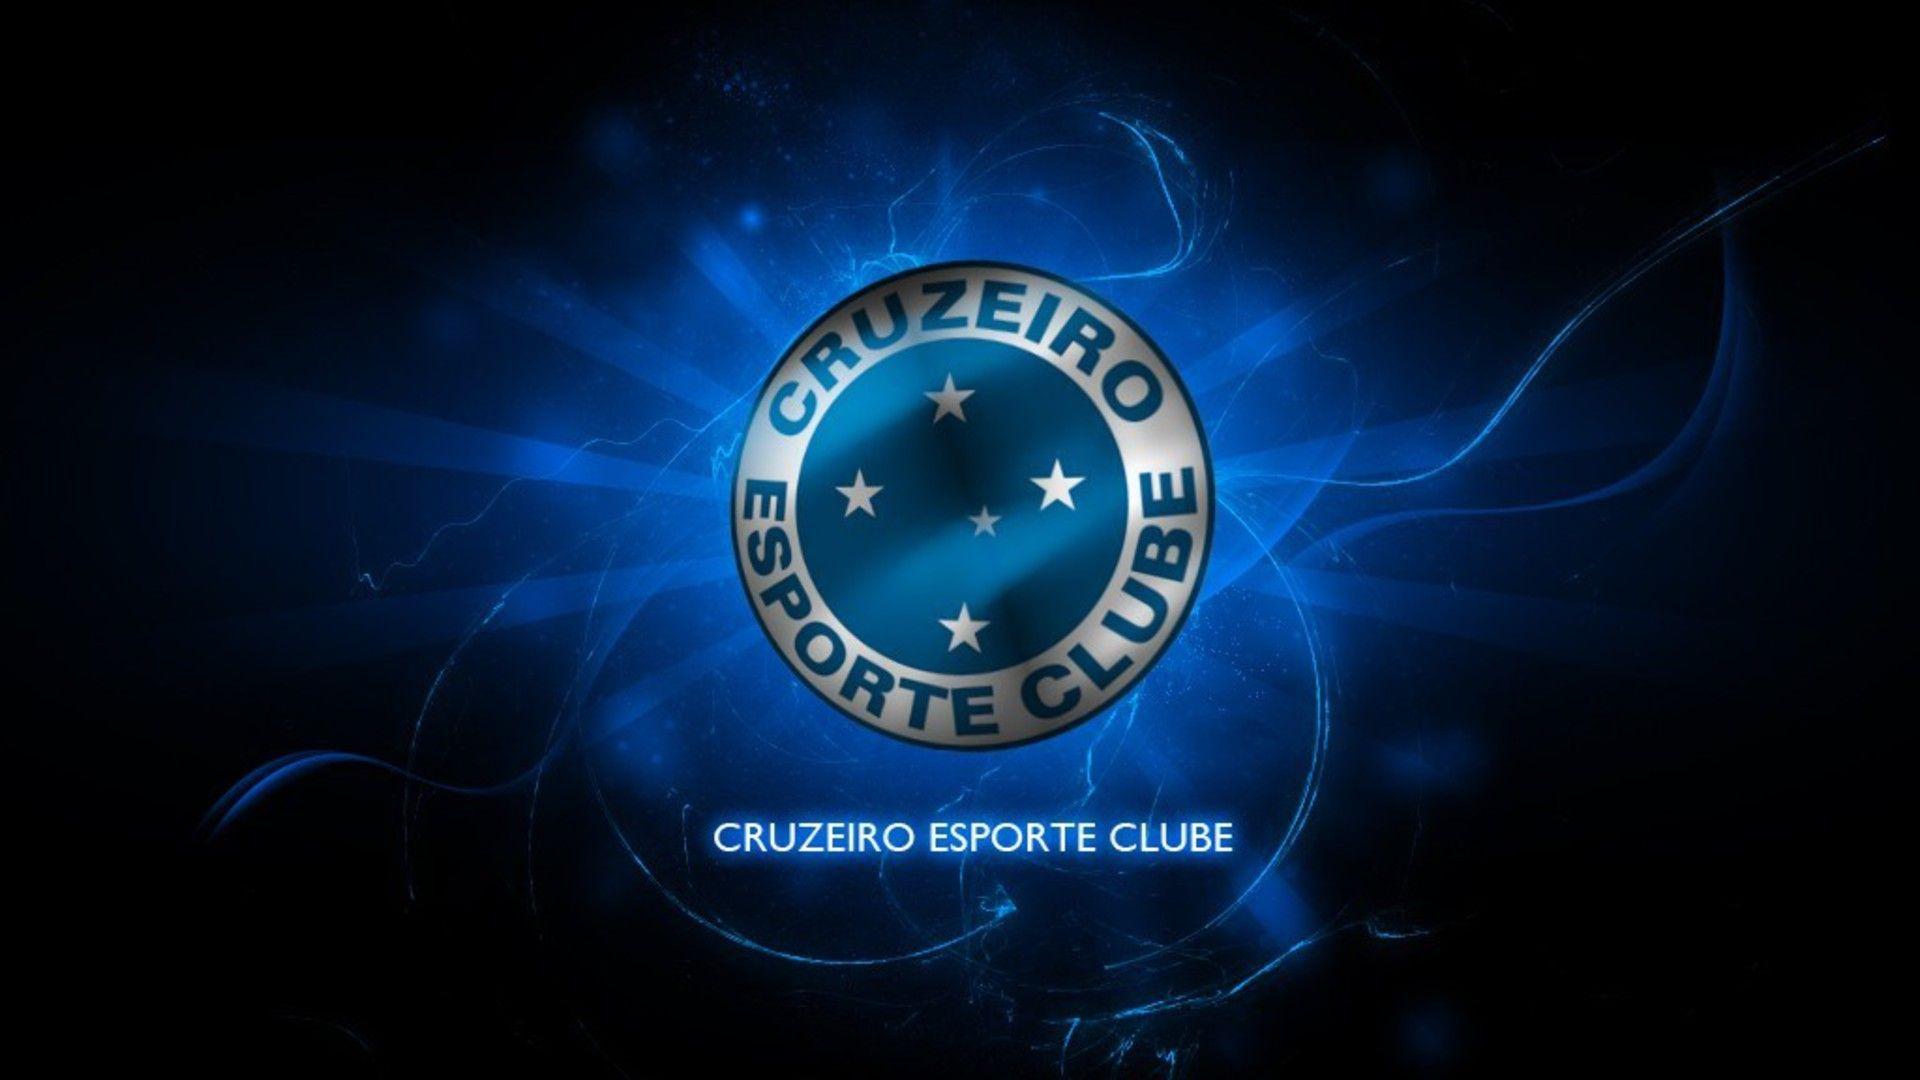 Cruzeiro Esporte Clube Wallpapers - Top Free Cruzeiro Esporte Clube Backgrounds - WallpaperAccess